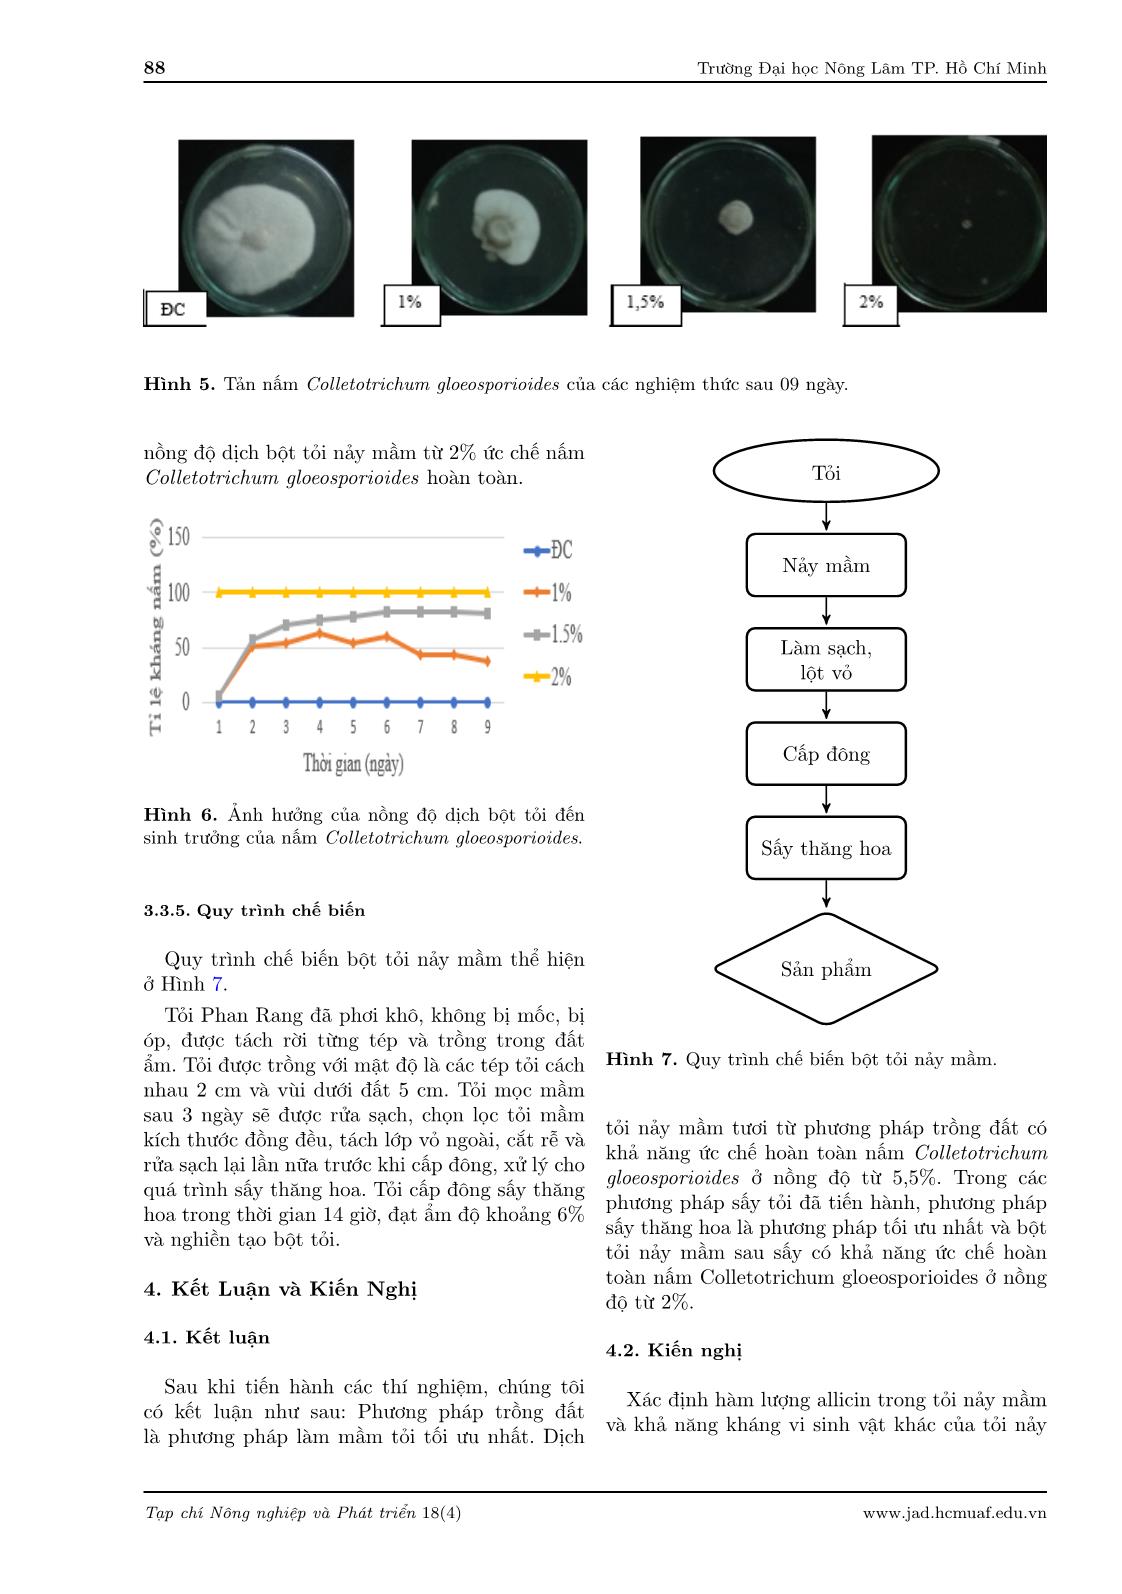 Nghiên cứu quy trình chế biến bột mầm tỏi từ tỏi Phan Rang trang 8